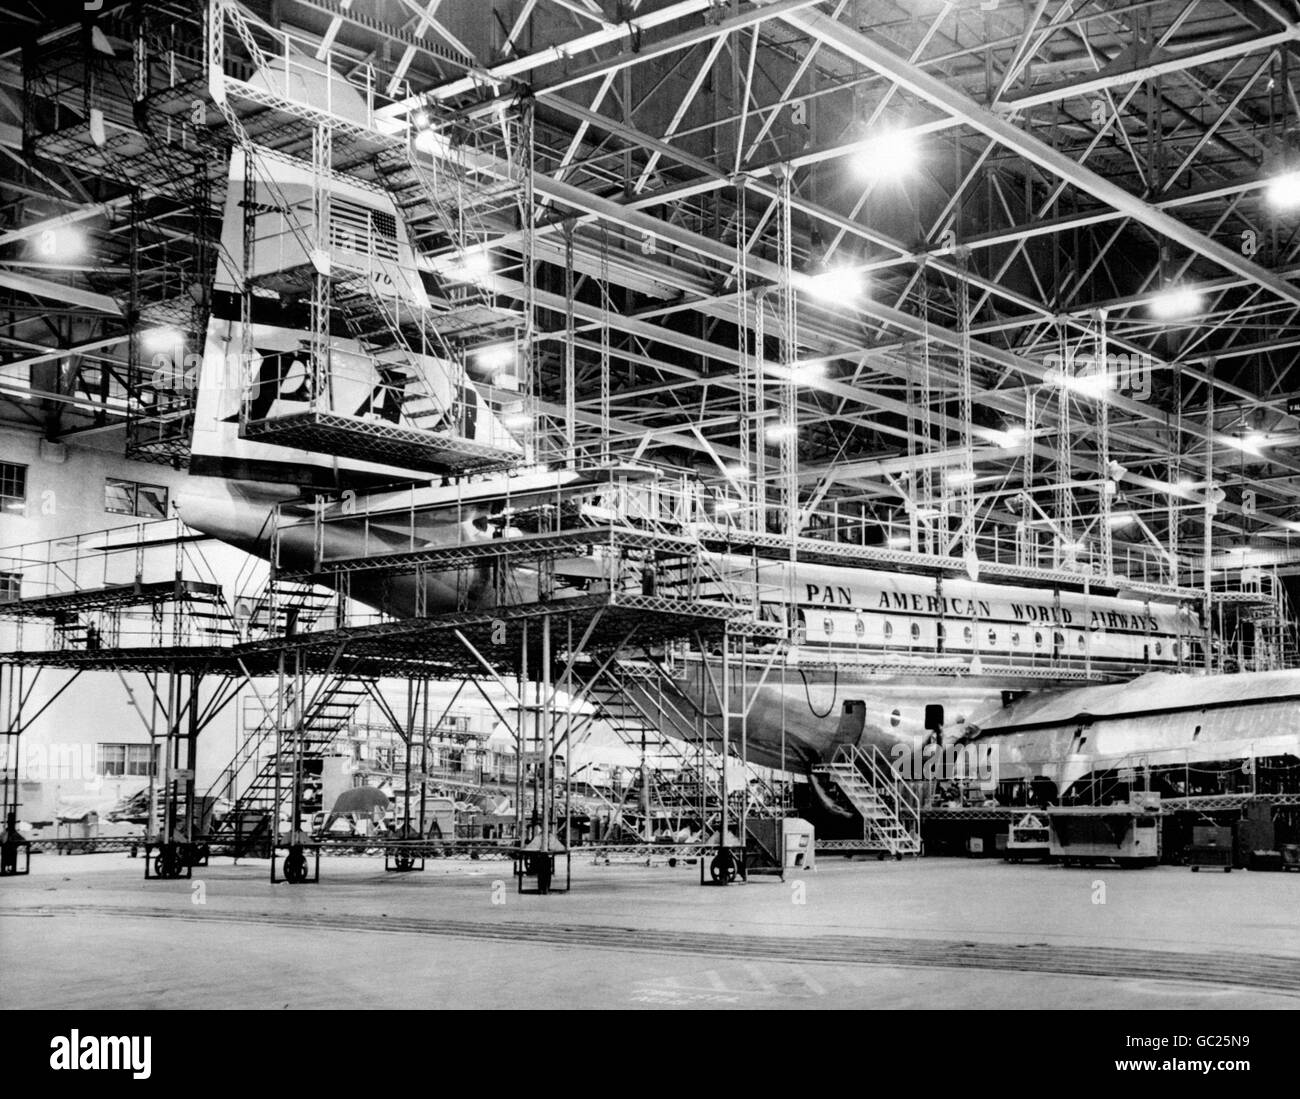 Um die Überholung der riesigen Stratocruisers der Pan-American World Airways Flotte zu übernehmen, hat Pan-am diese massive Überholungsdock in Los Angeles gebaut. Stockfoto